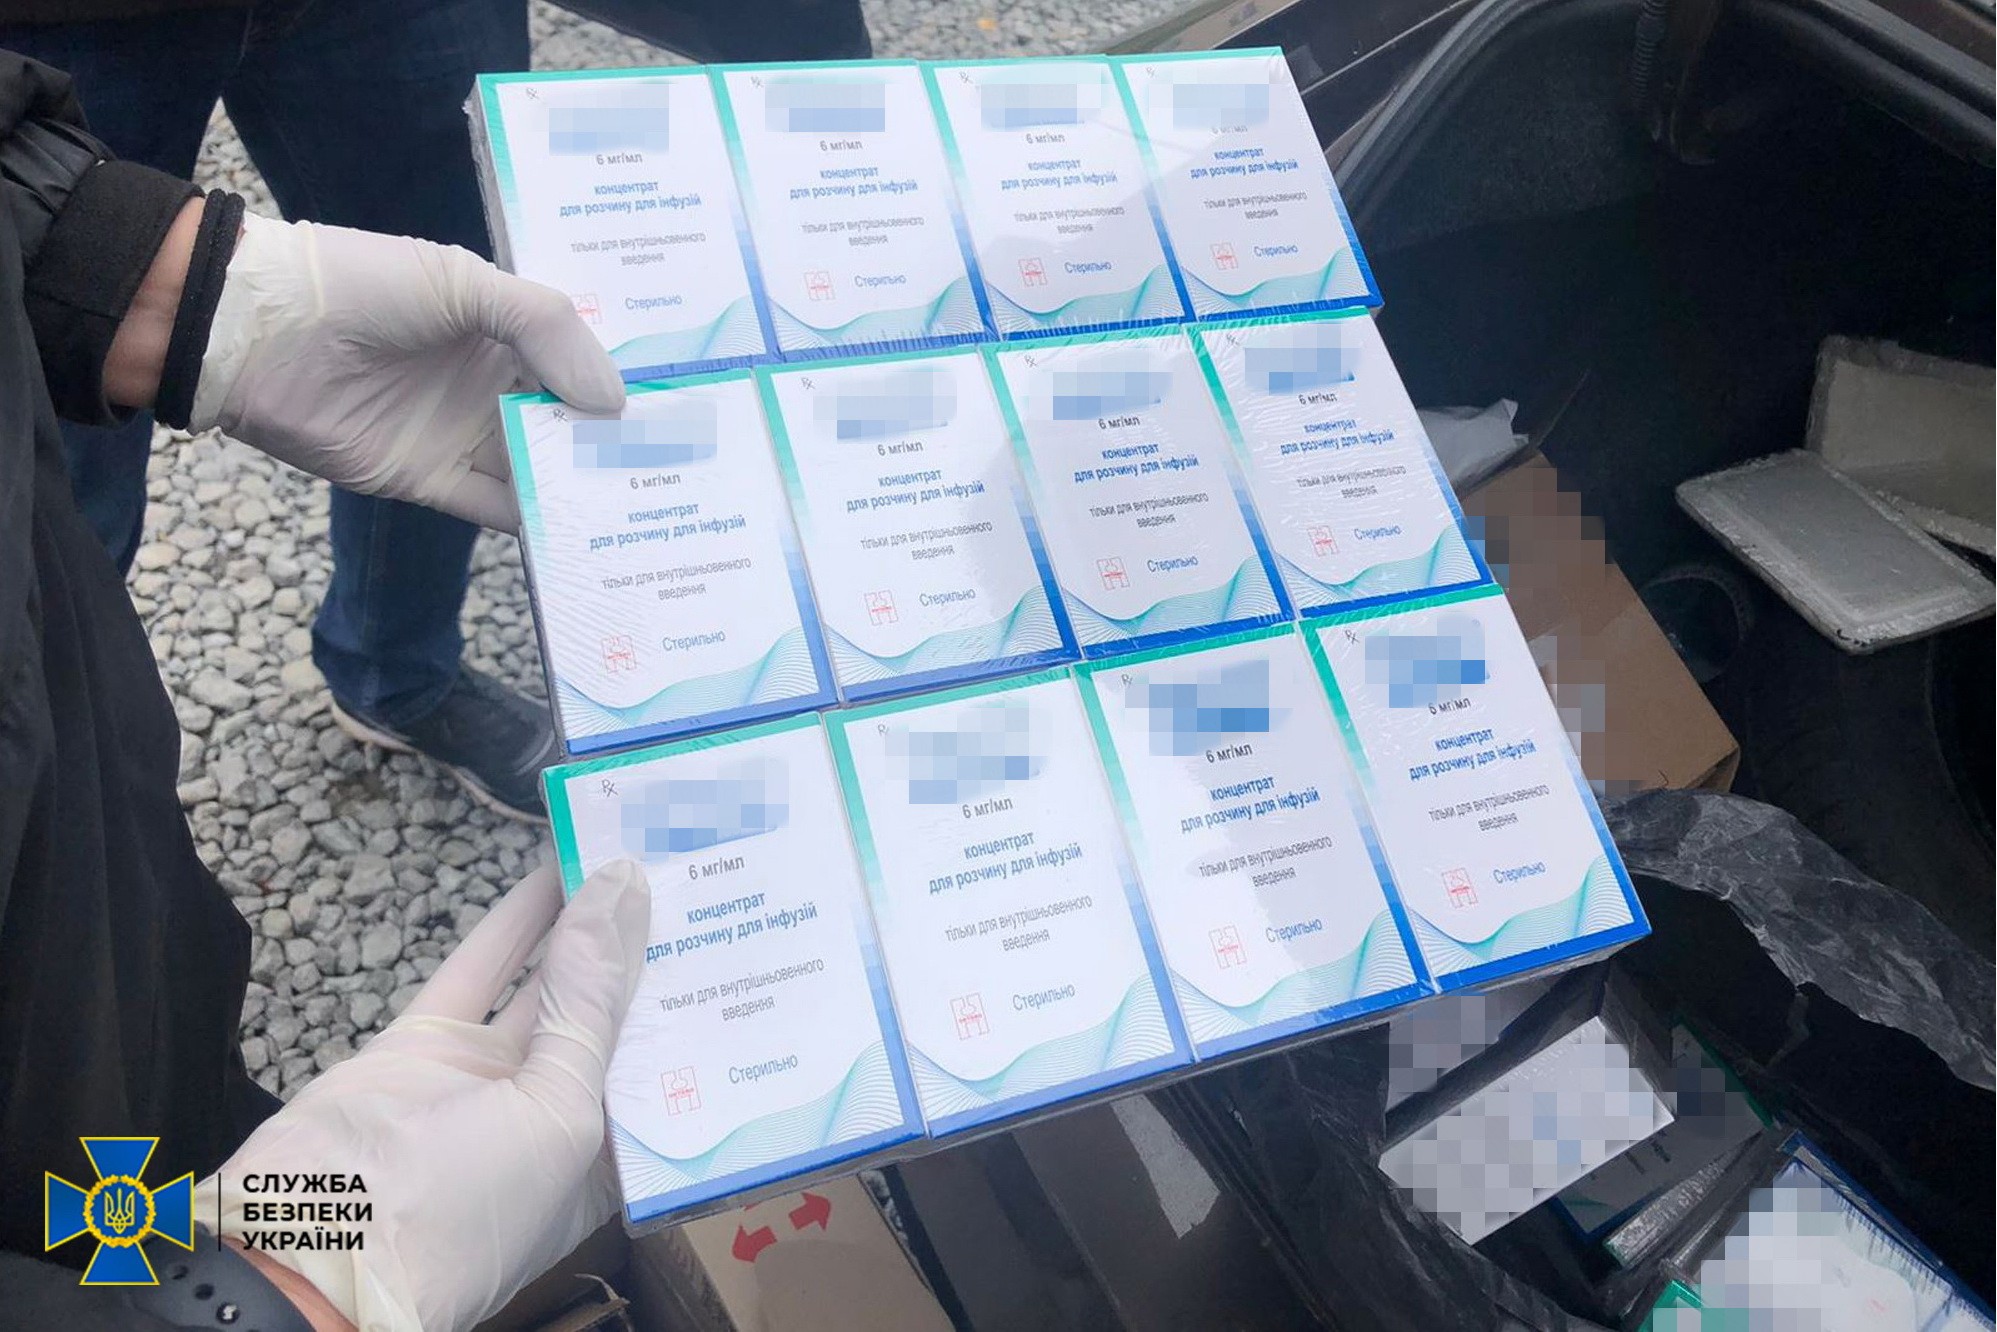 СБУ: Медики Житомирского онкодиспансера заставляли пациентов покупать бесплатные лекарства